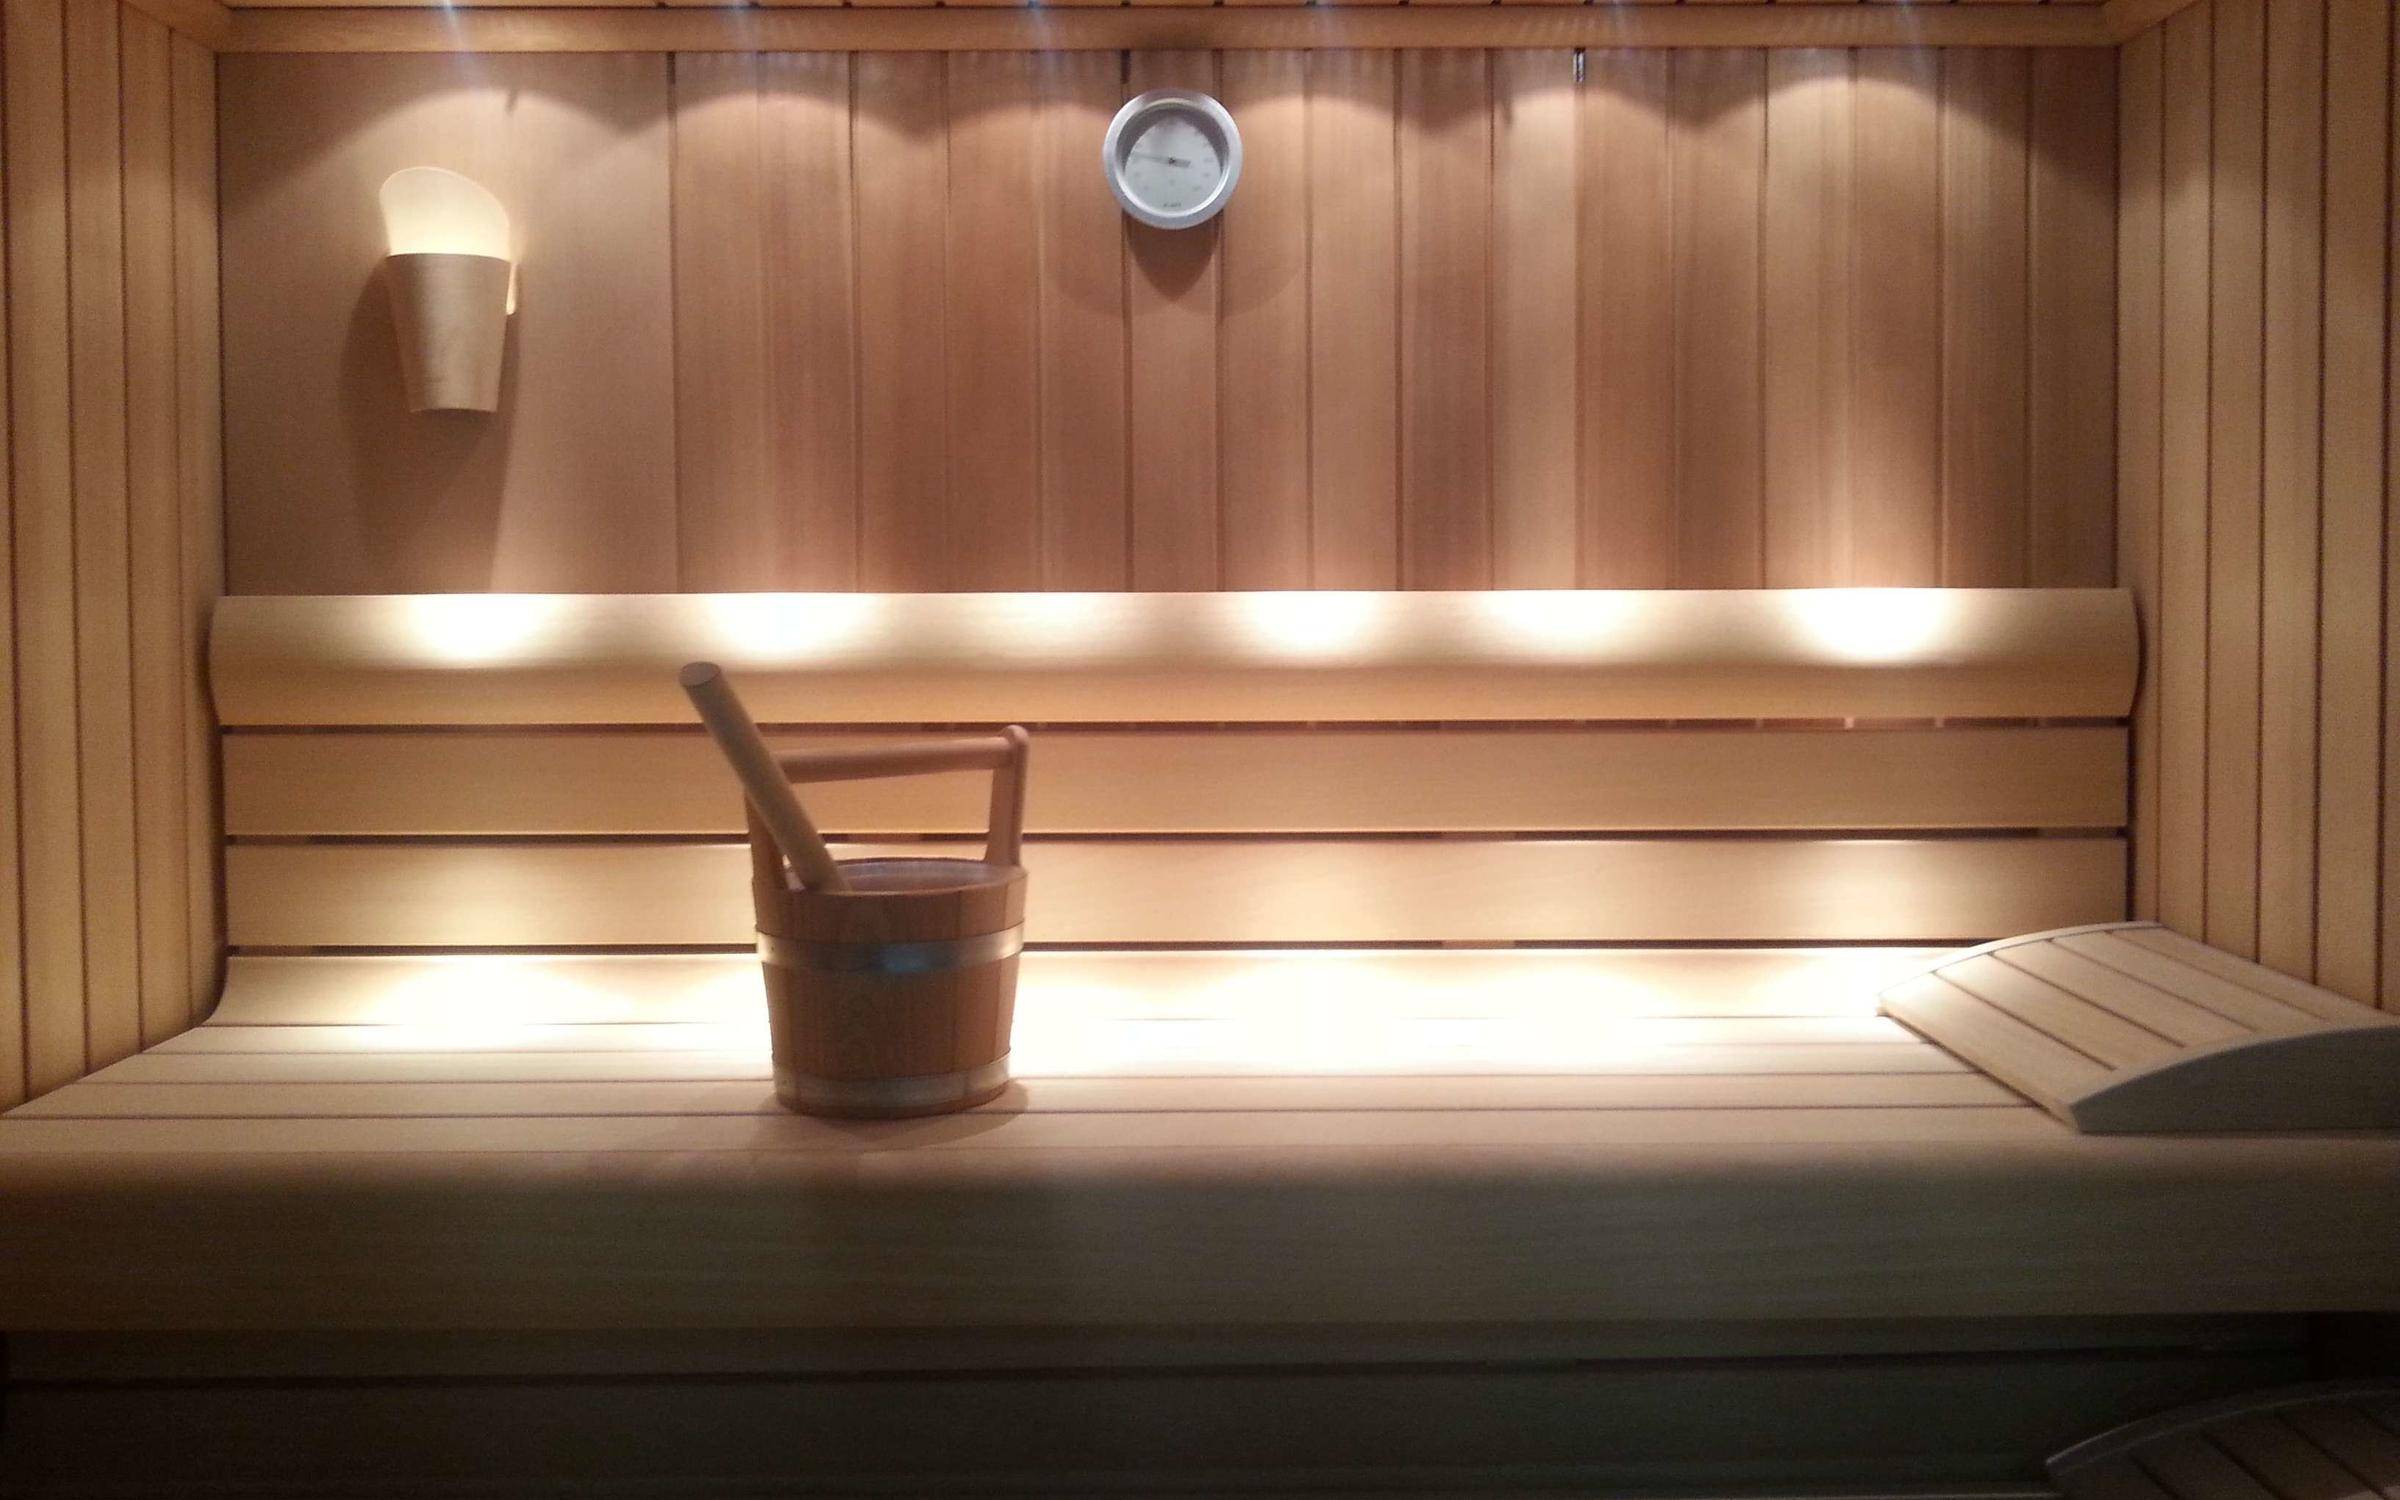 Правила освещения в бане - выбираем надёжные и безопасные светильники